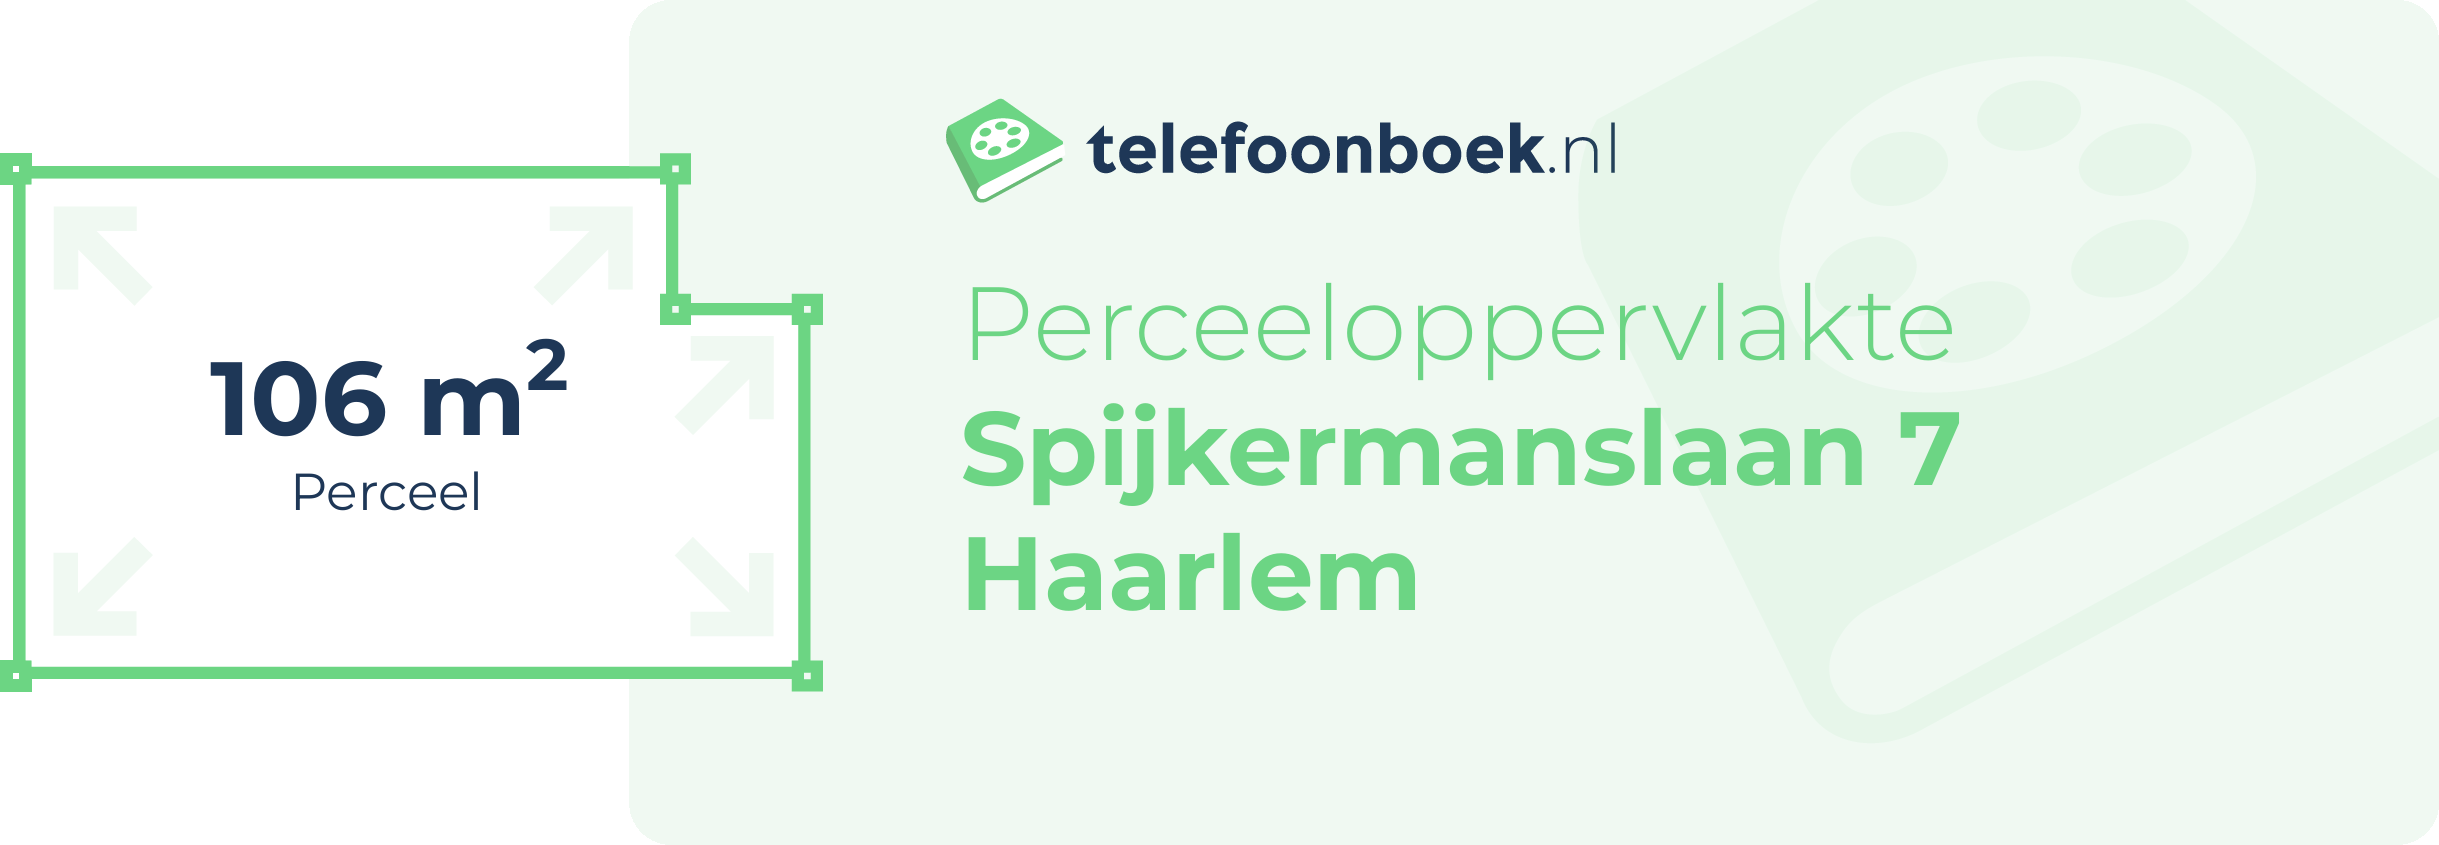 Perceeloppervlakte Spijkermanslaan 7 Haarlem